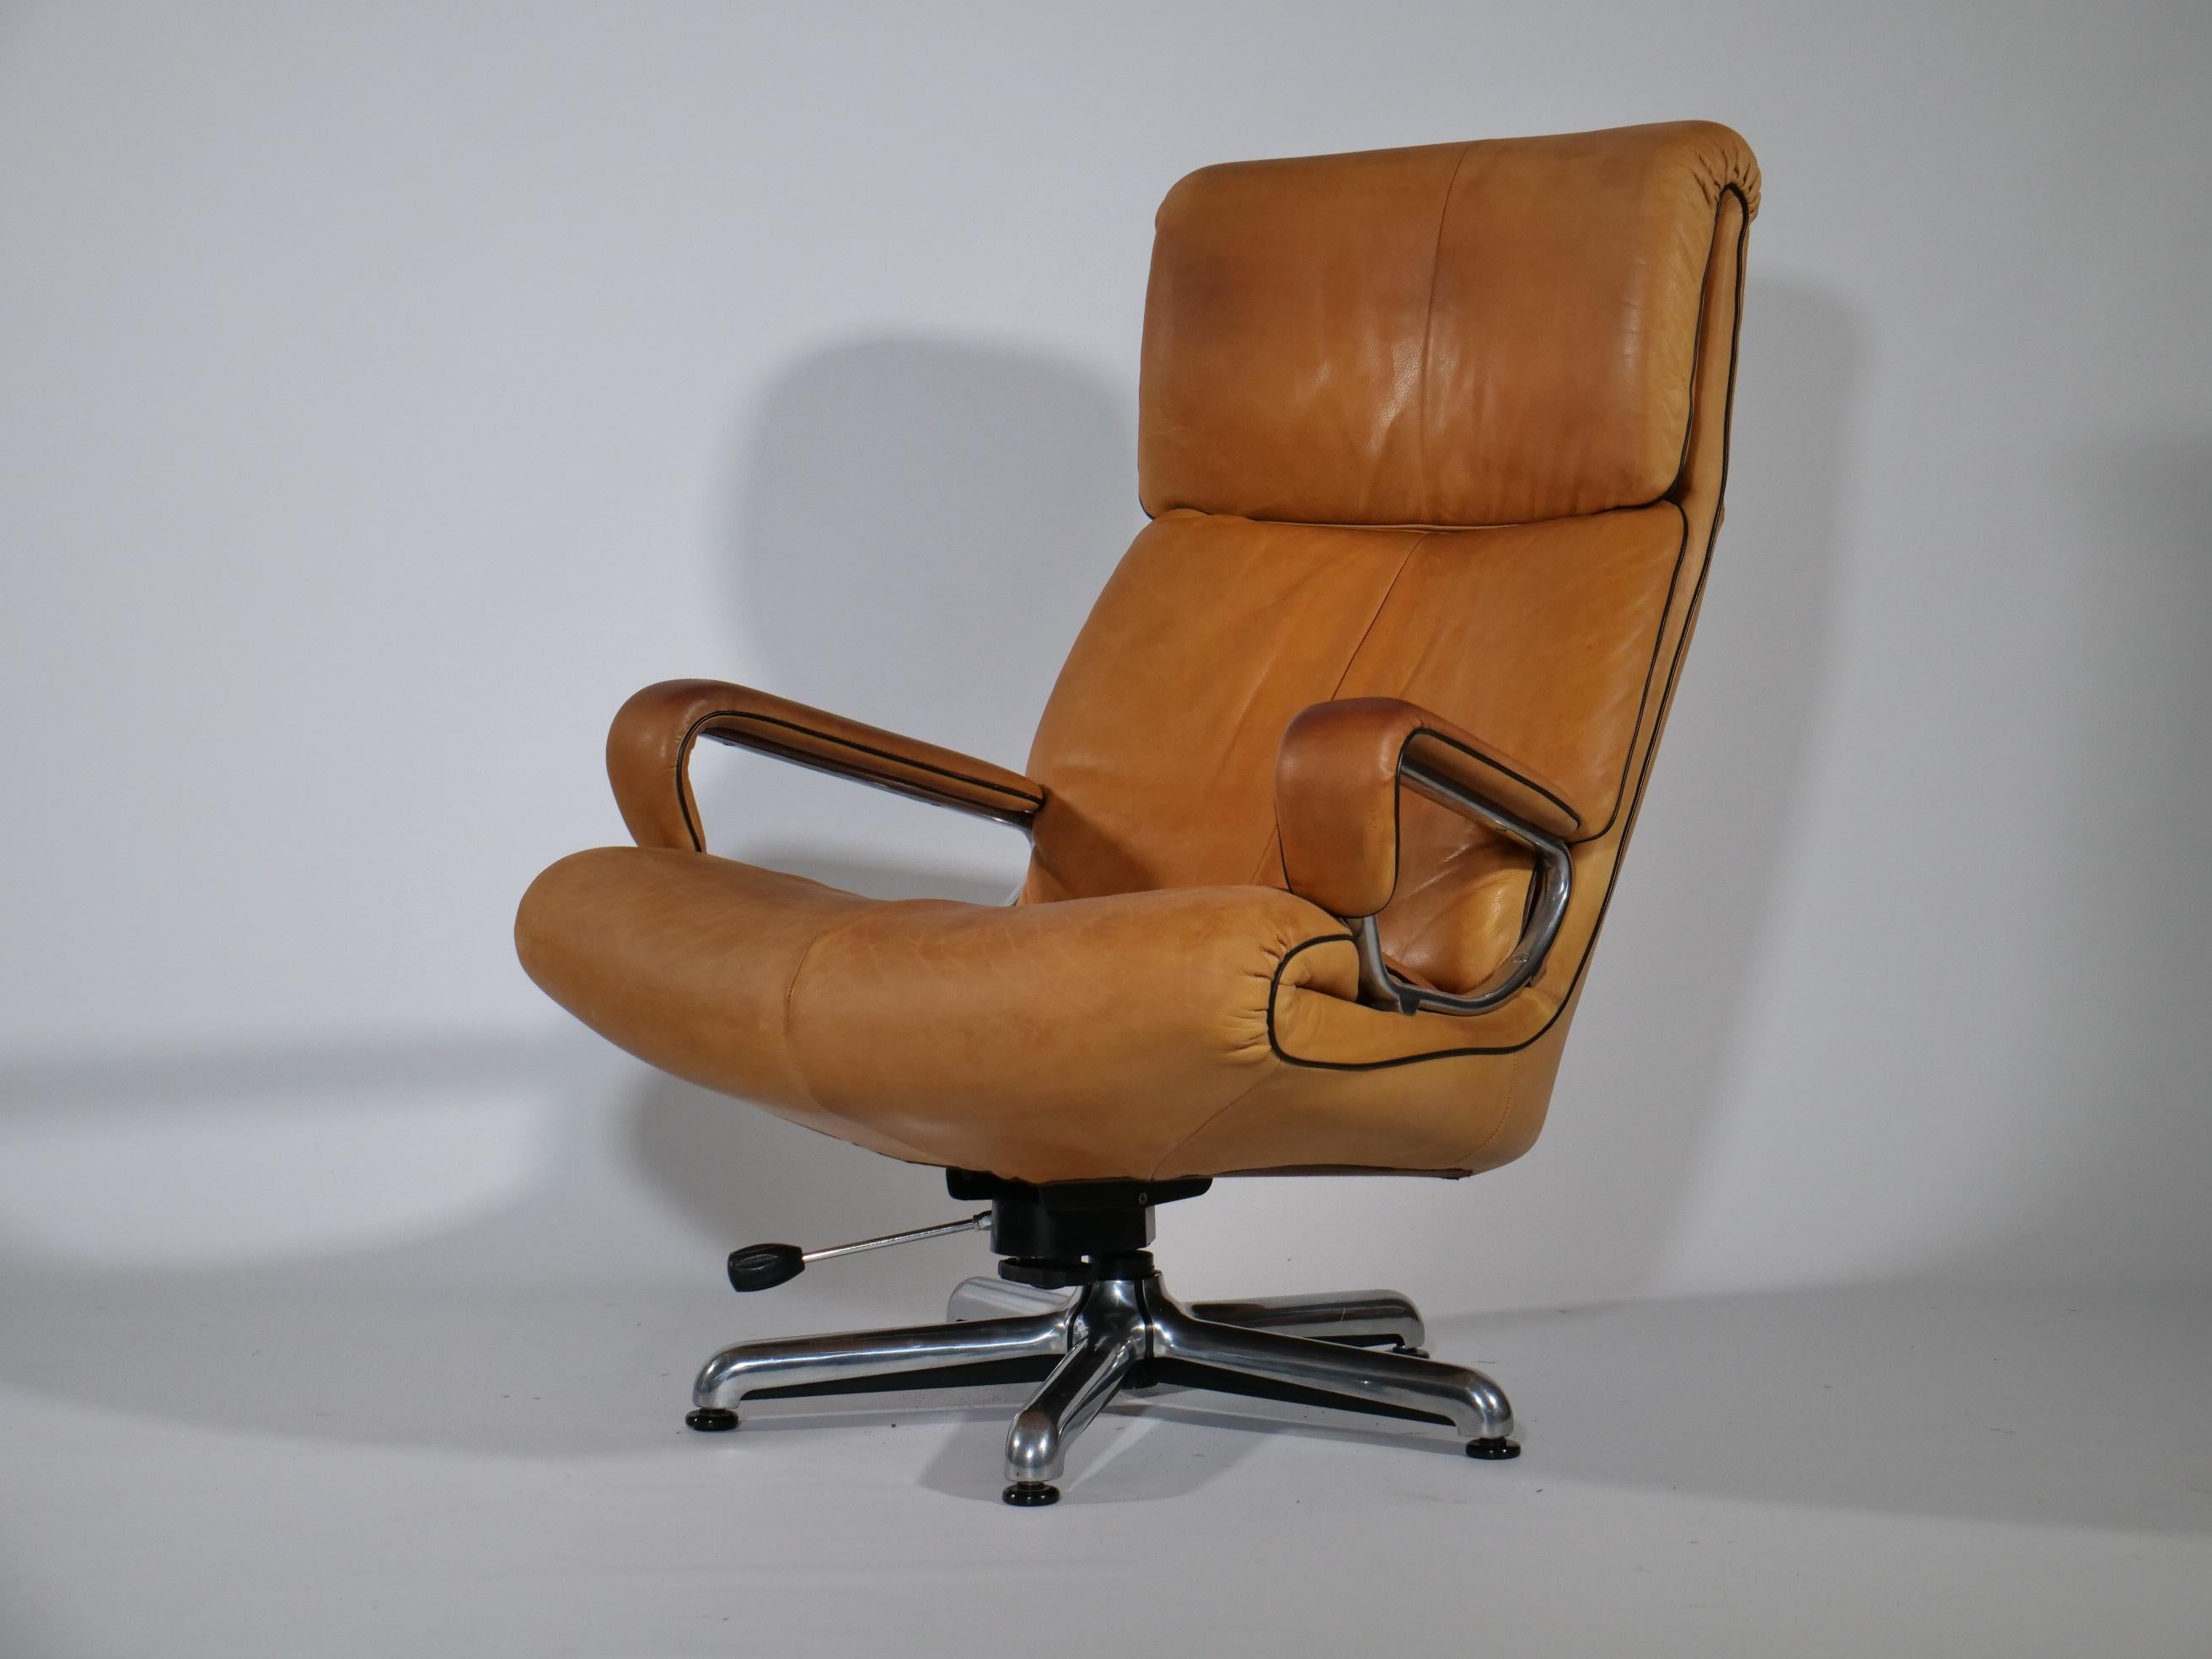 Cognacfarbener Ledersessel von Strässle Model: King. 
Der drehbare Sessel wurde von André Vandenbeuck designt und in hochwertiger Qualität in der Schweiz produziert. Er ist Bestandteil der Strässle Collection! 
Ein wirklich extrem bequemer Leder